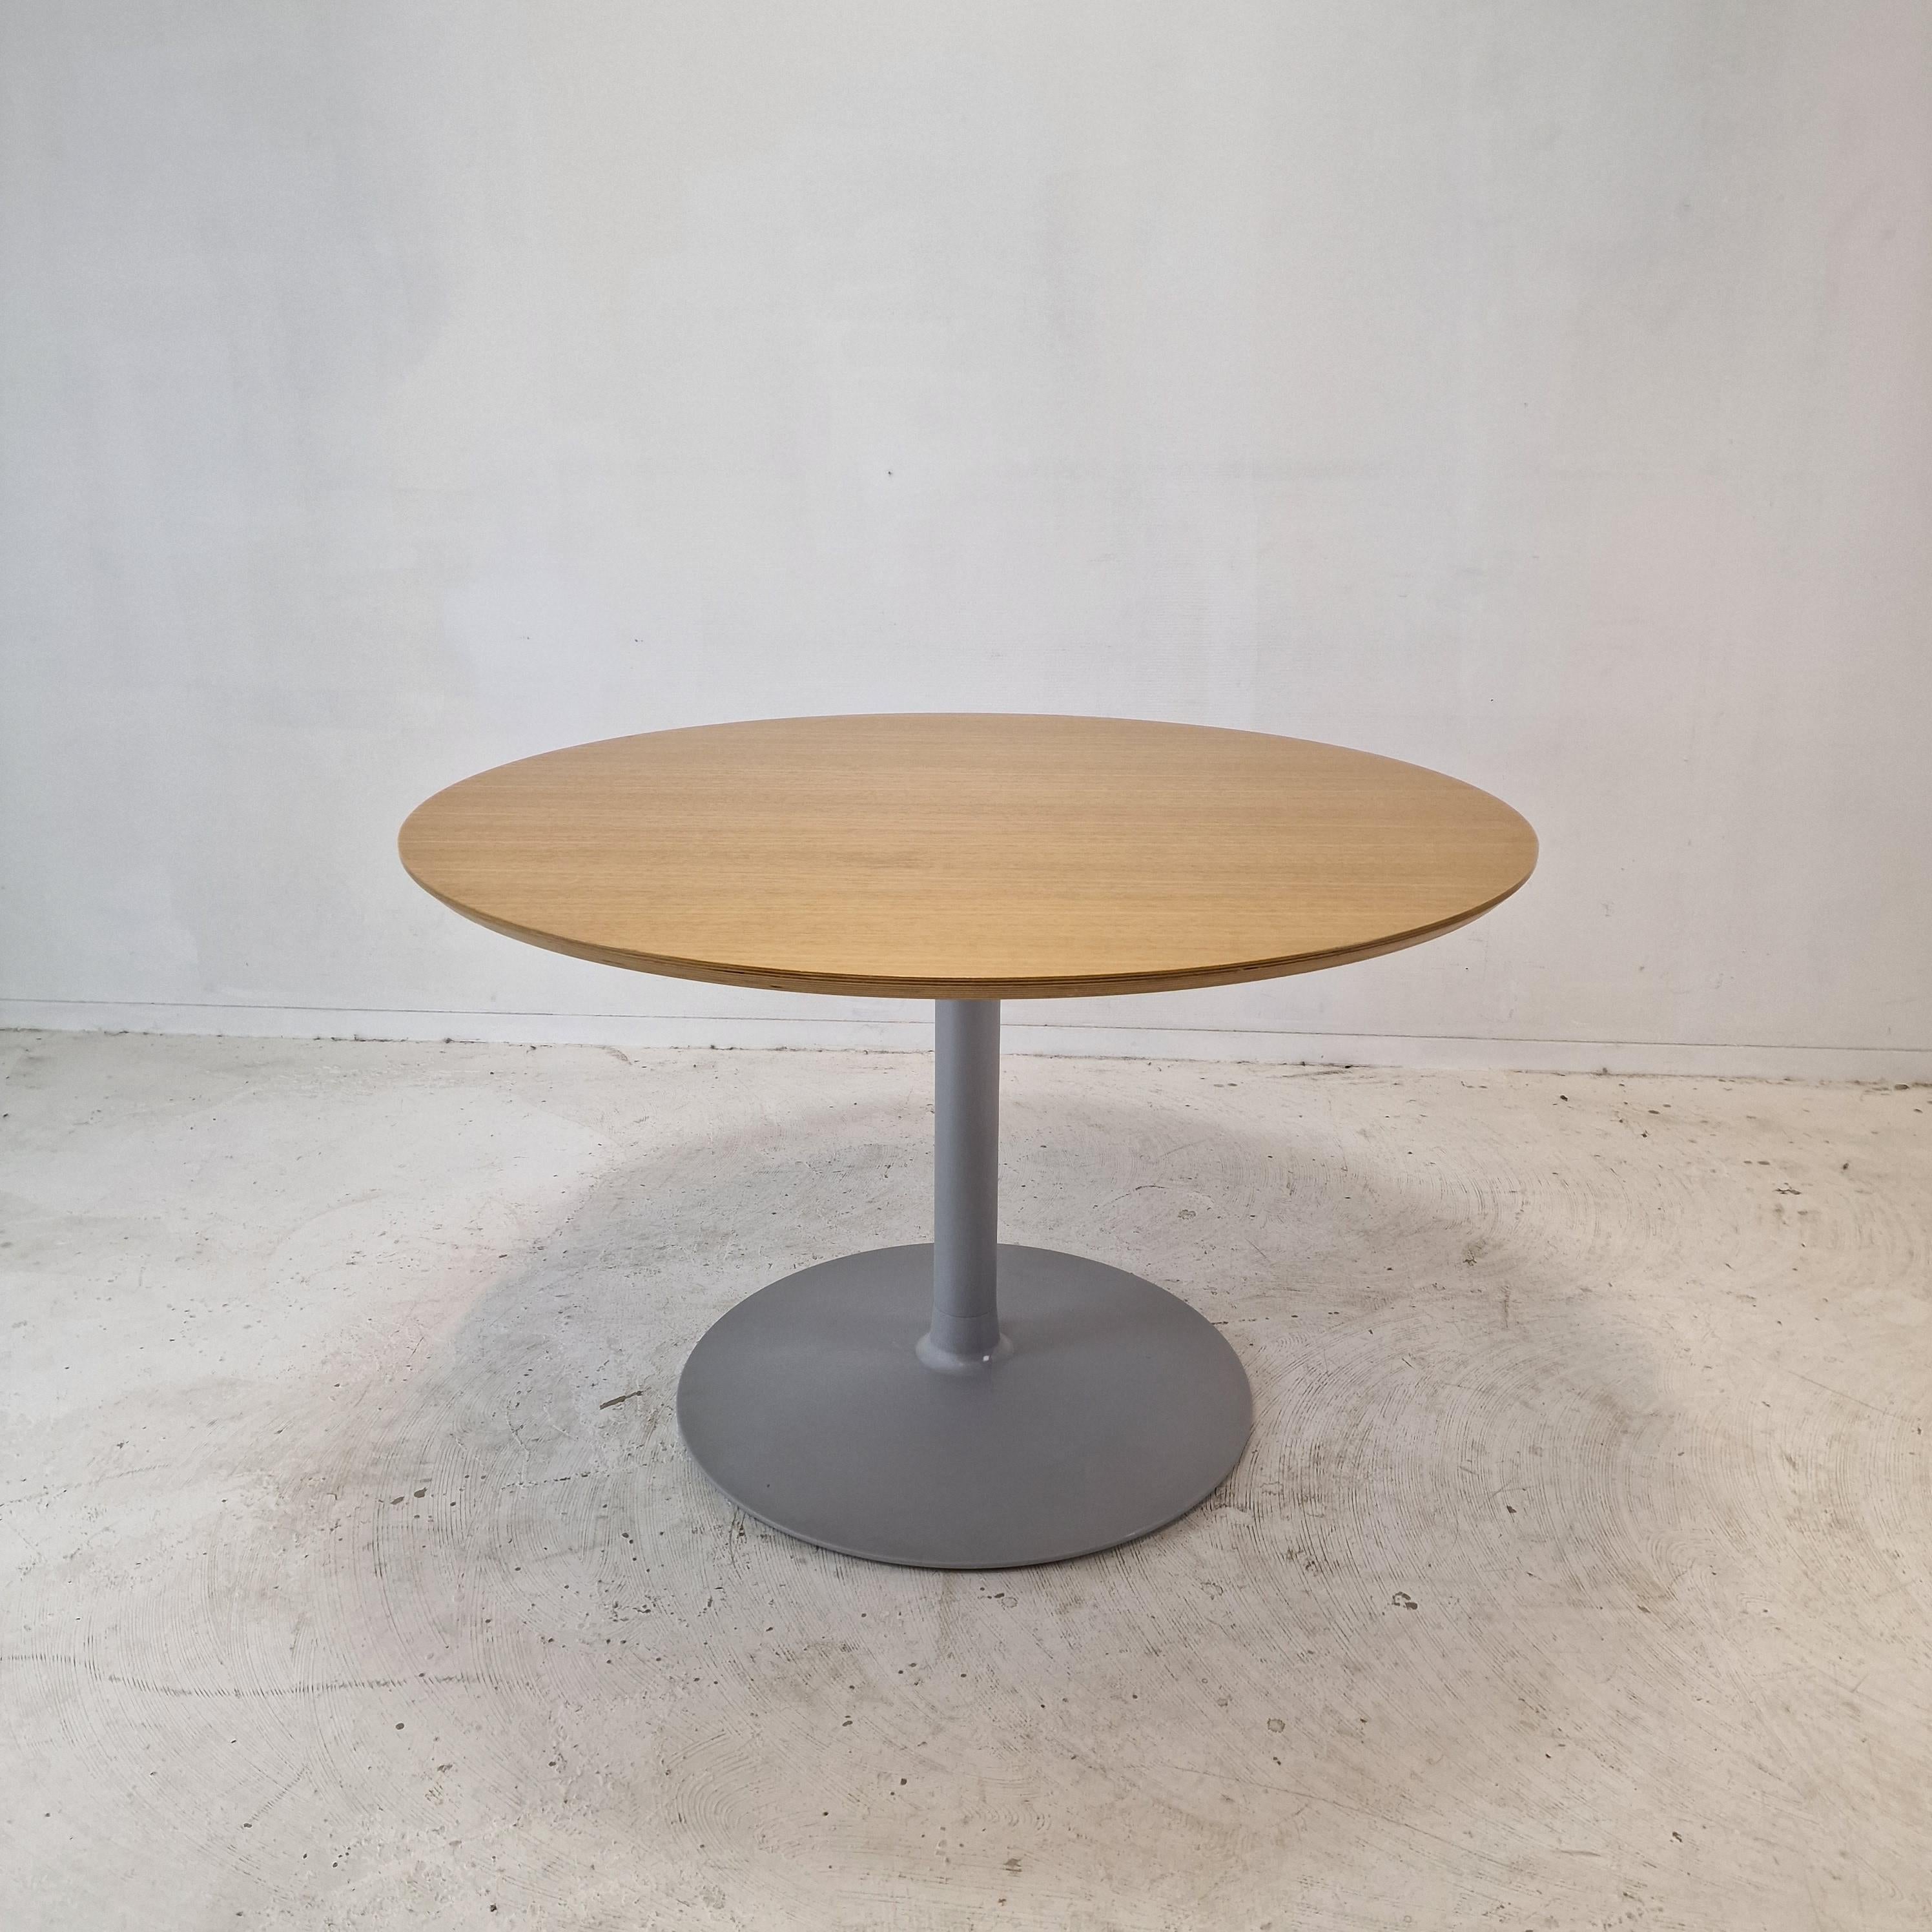 Sehr schöner runder Esstisch. 
Entworfen von dem berühmten Pierre Paulin in den 60er Jahren für Artifort. 
Dieser Artikel wird im Jahr 2019 hergestellt.

Sehr stabiler Fuß in der Farbe grau mit einer holzverkleideten Platte. 

Der Tisch ist in sehr